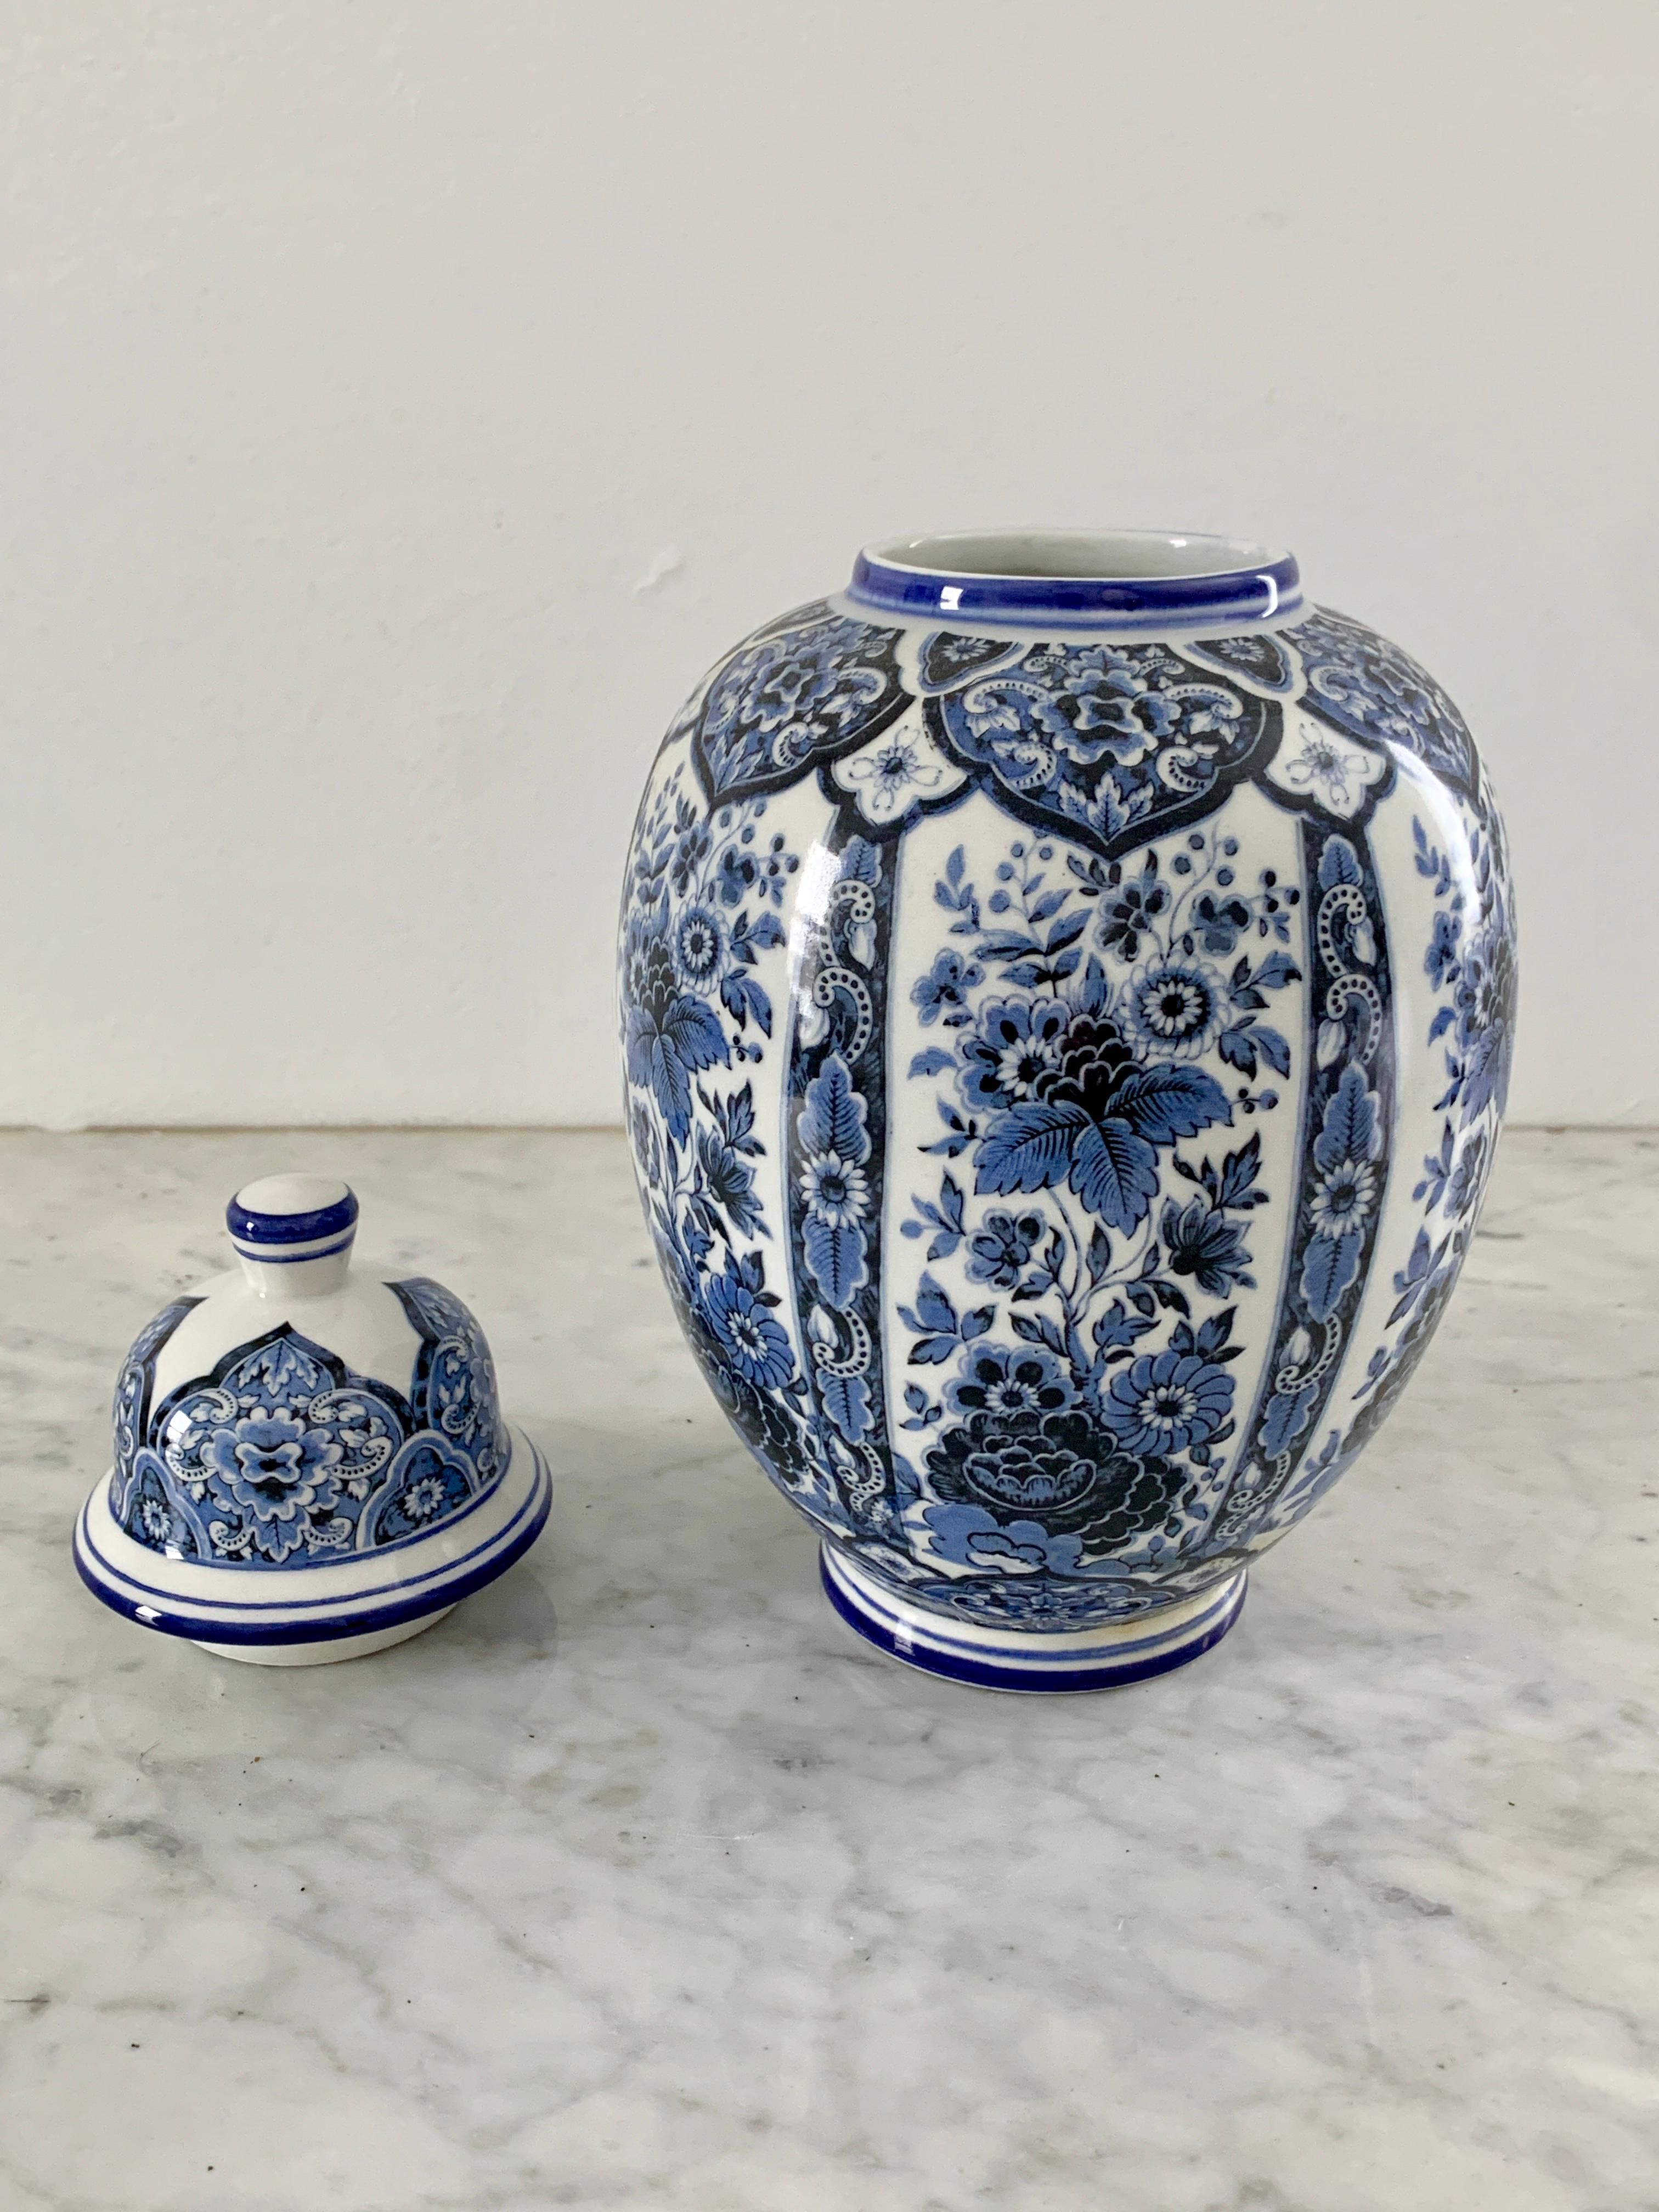 Porcelaine Pot à gingembre en porcelaine de Delfts bleu et blanc de style chinoiseries par Ardalt Blue Delfia en vente